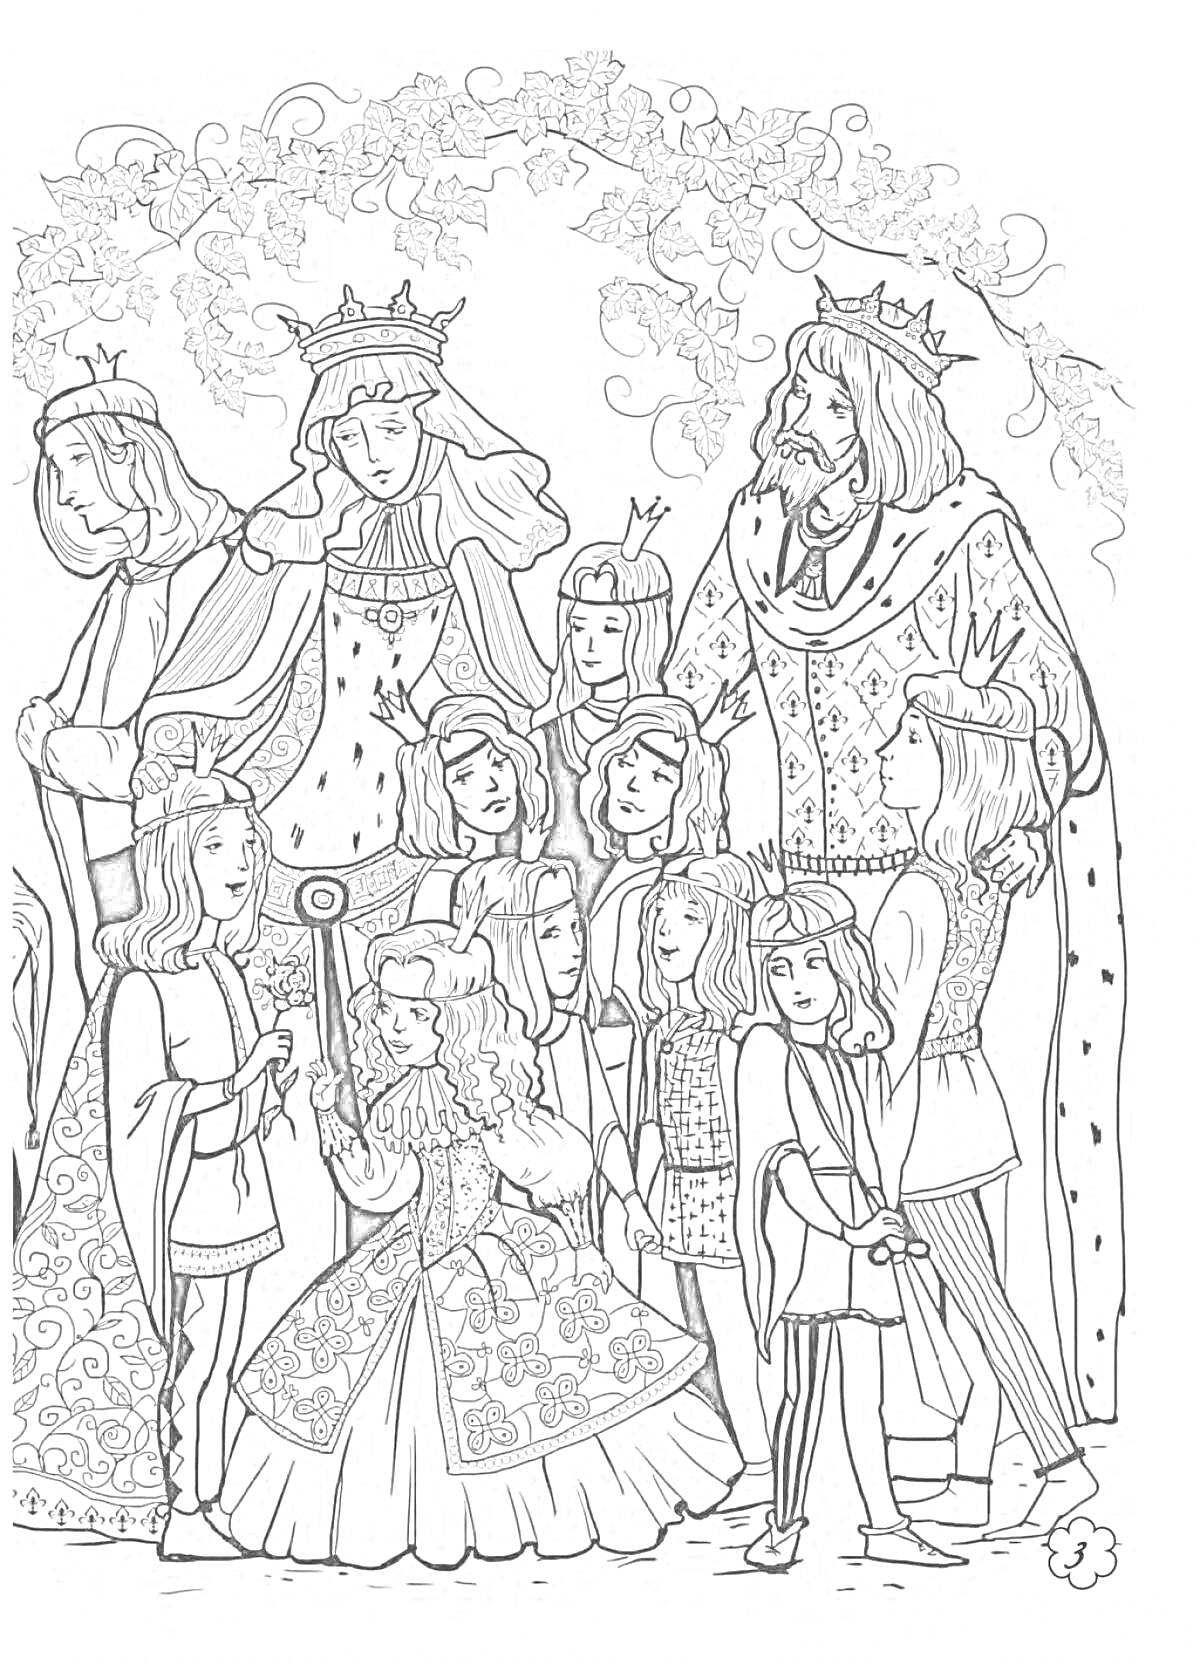 Королевская семья с детьми под виноградной аркой